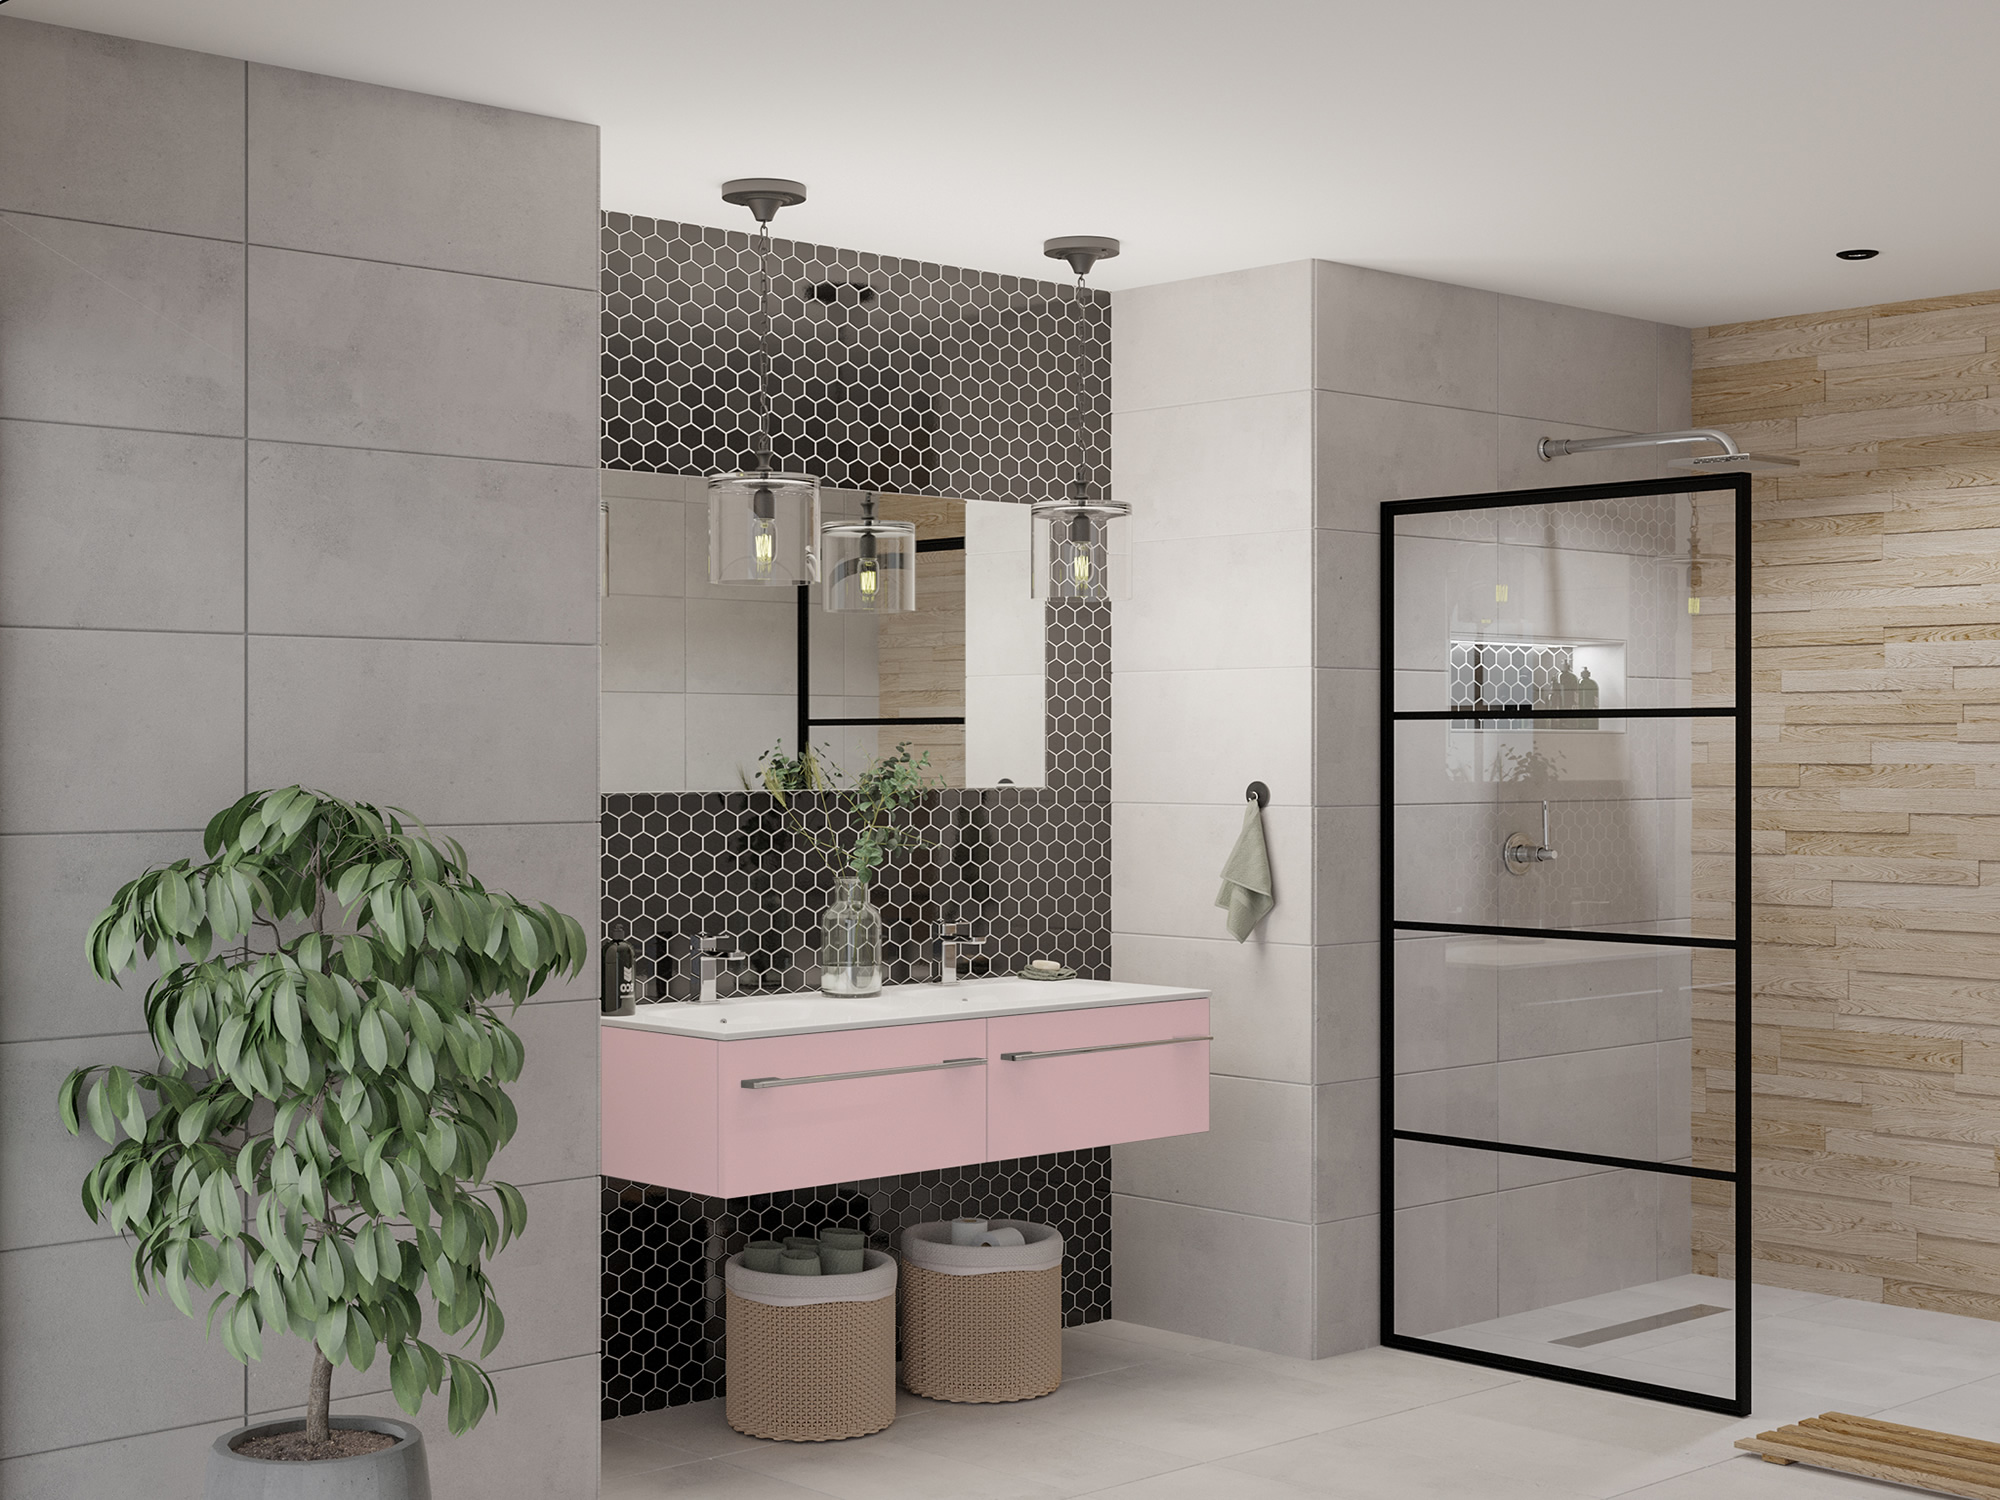 Design Metro Rose Bathroom